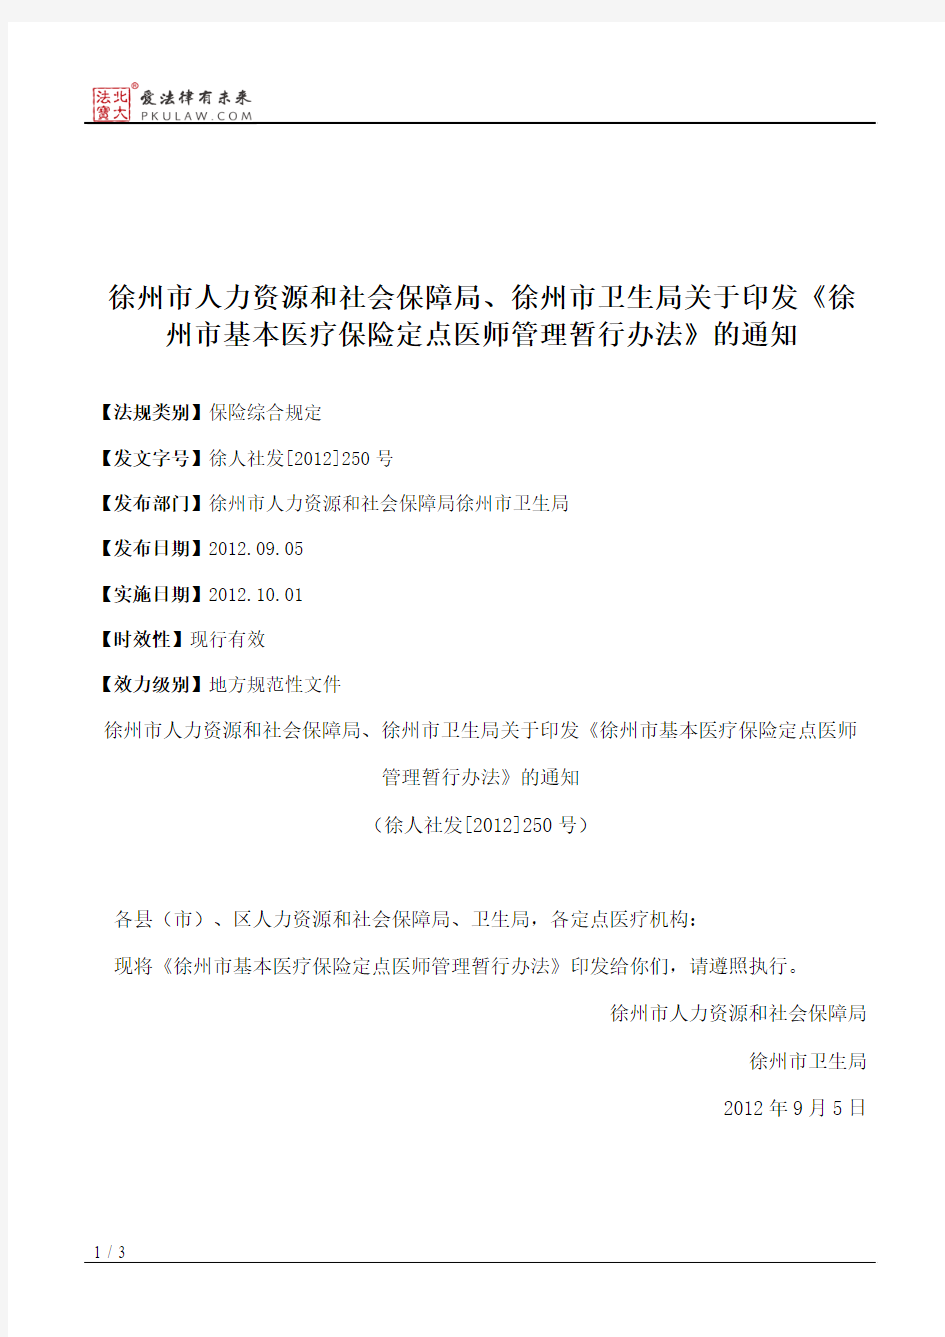 徐州市人力资源和社会保障局、徐州市卫生局关于印发《徐州市基本